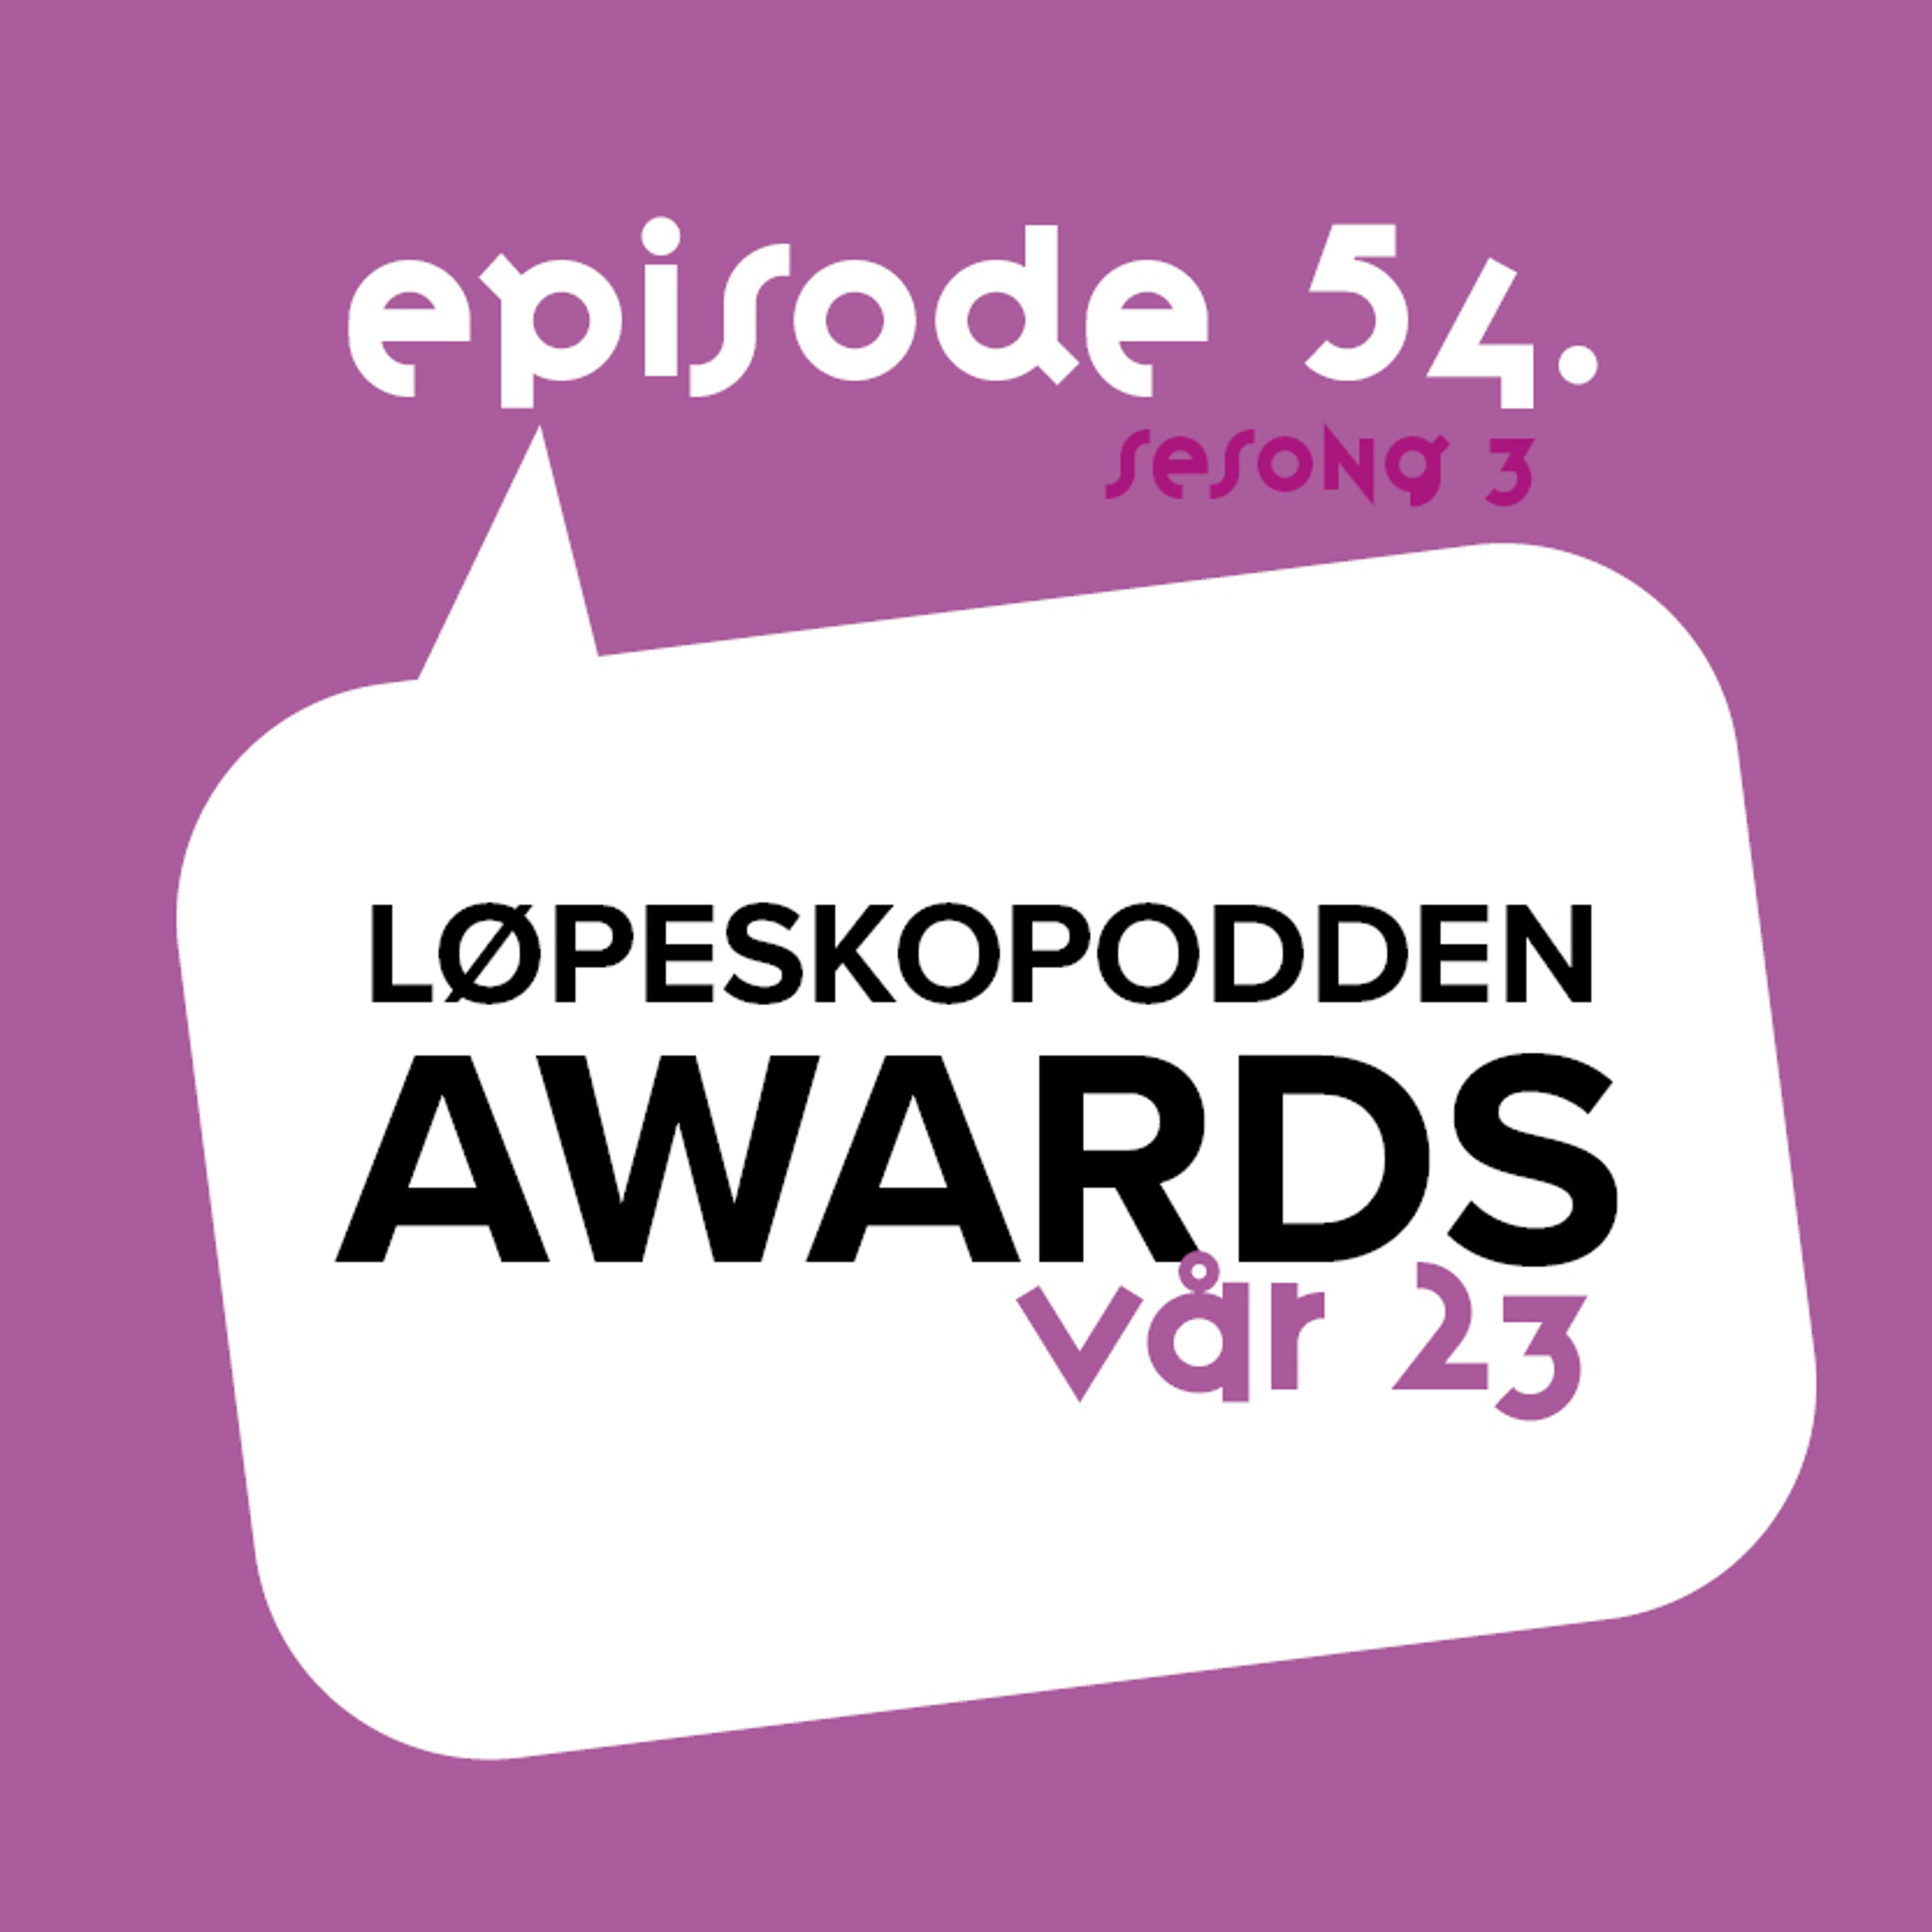 Løpeskopodden Episode 54 - Løpeskopodden Awards Vår 23